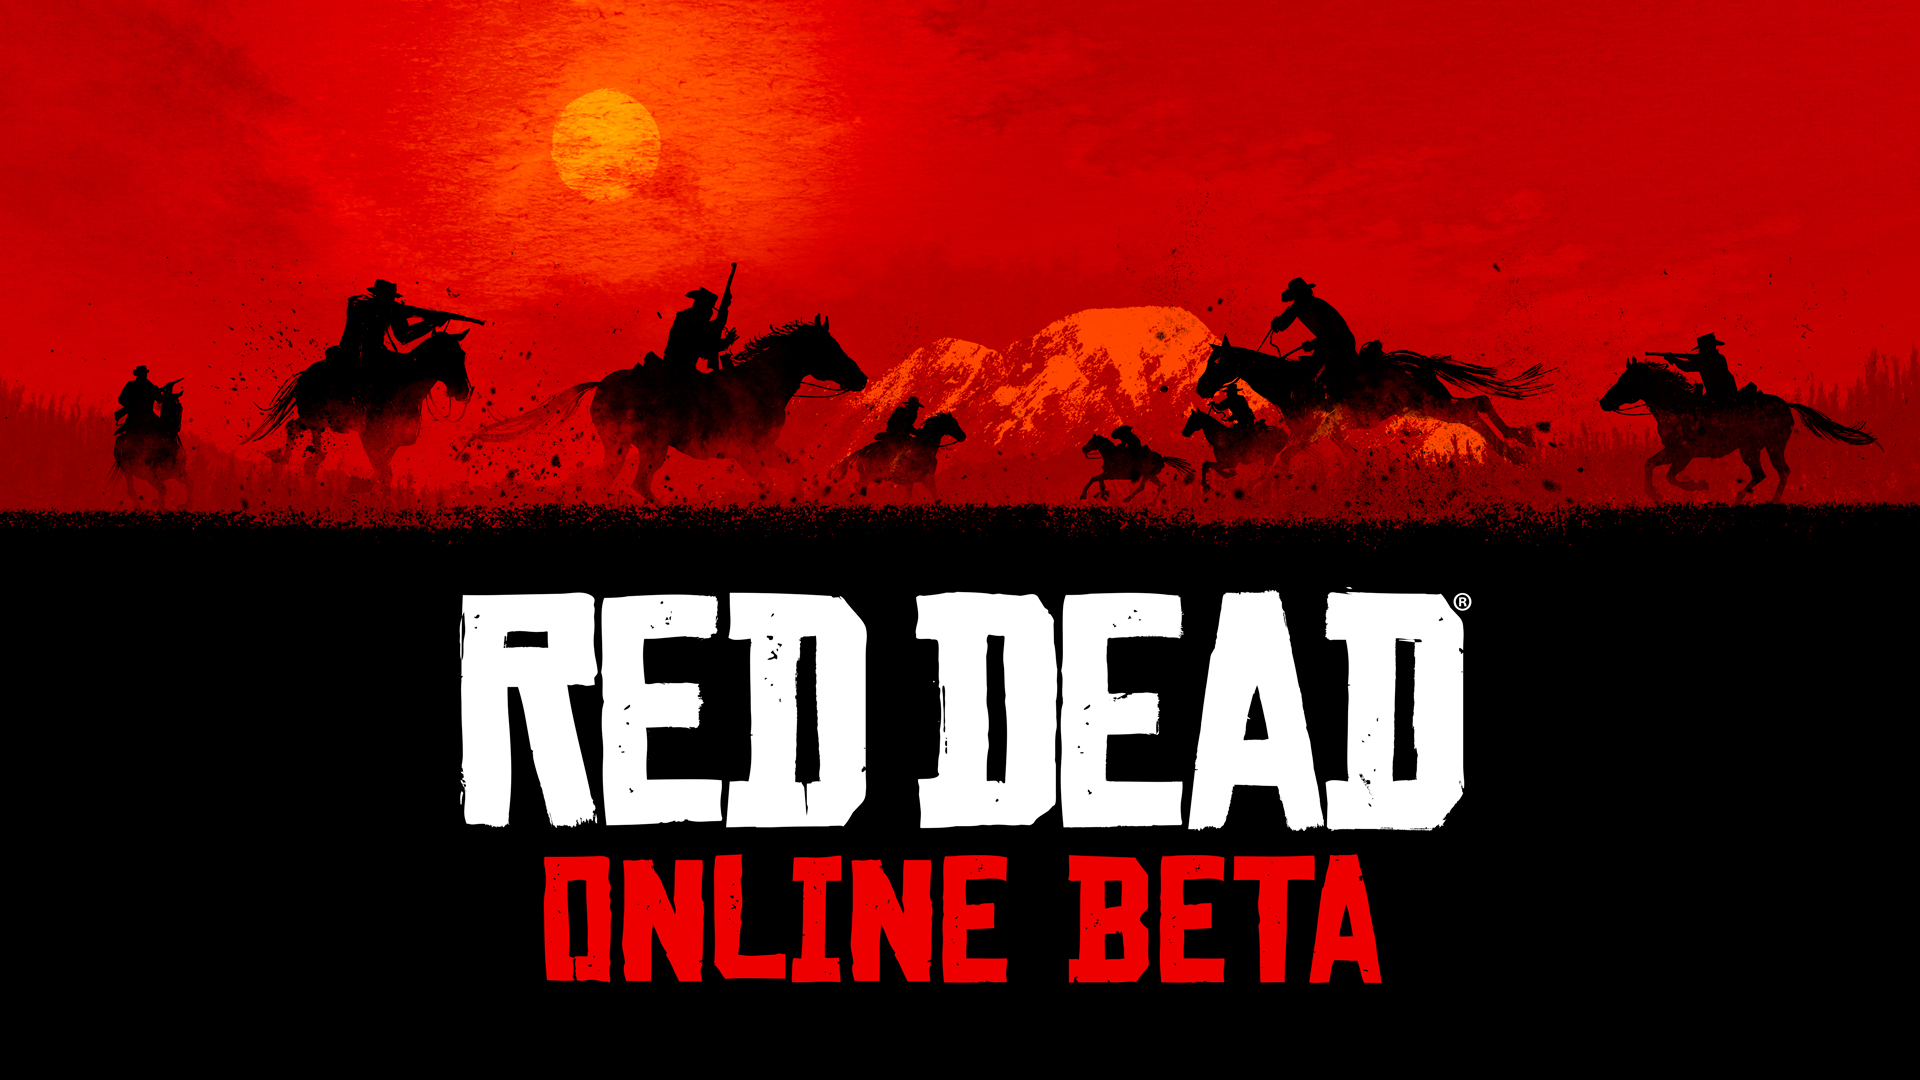 آپدیت ۱.۰۳ بازی Red Dead Redemption 2 منتشر شد؛ اضافه شدن بخش آنلاین